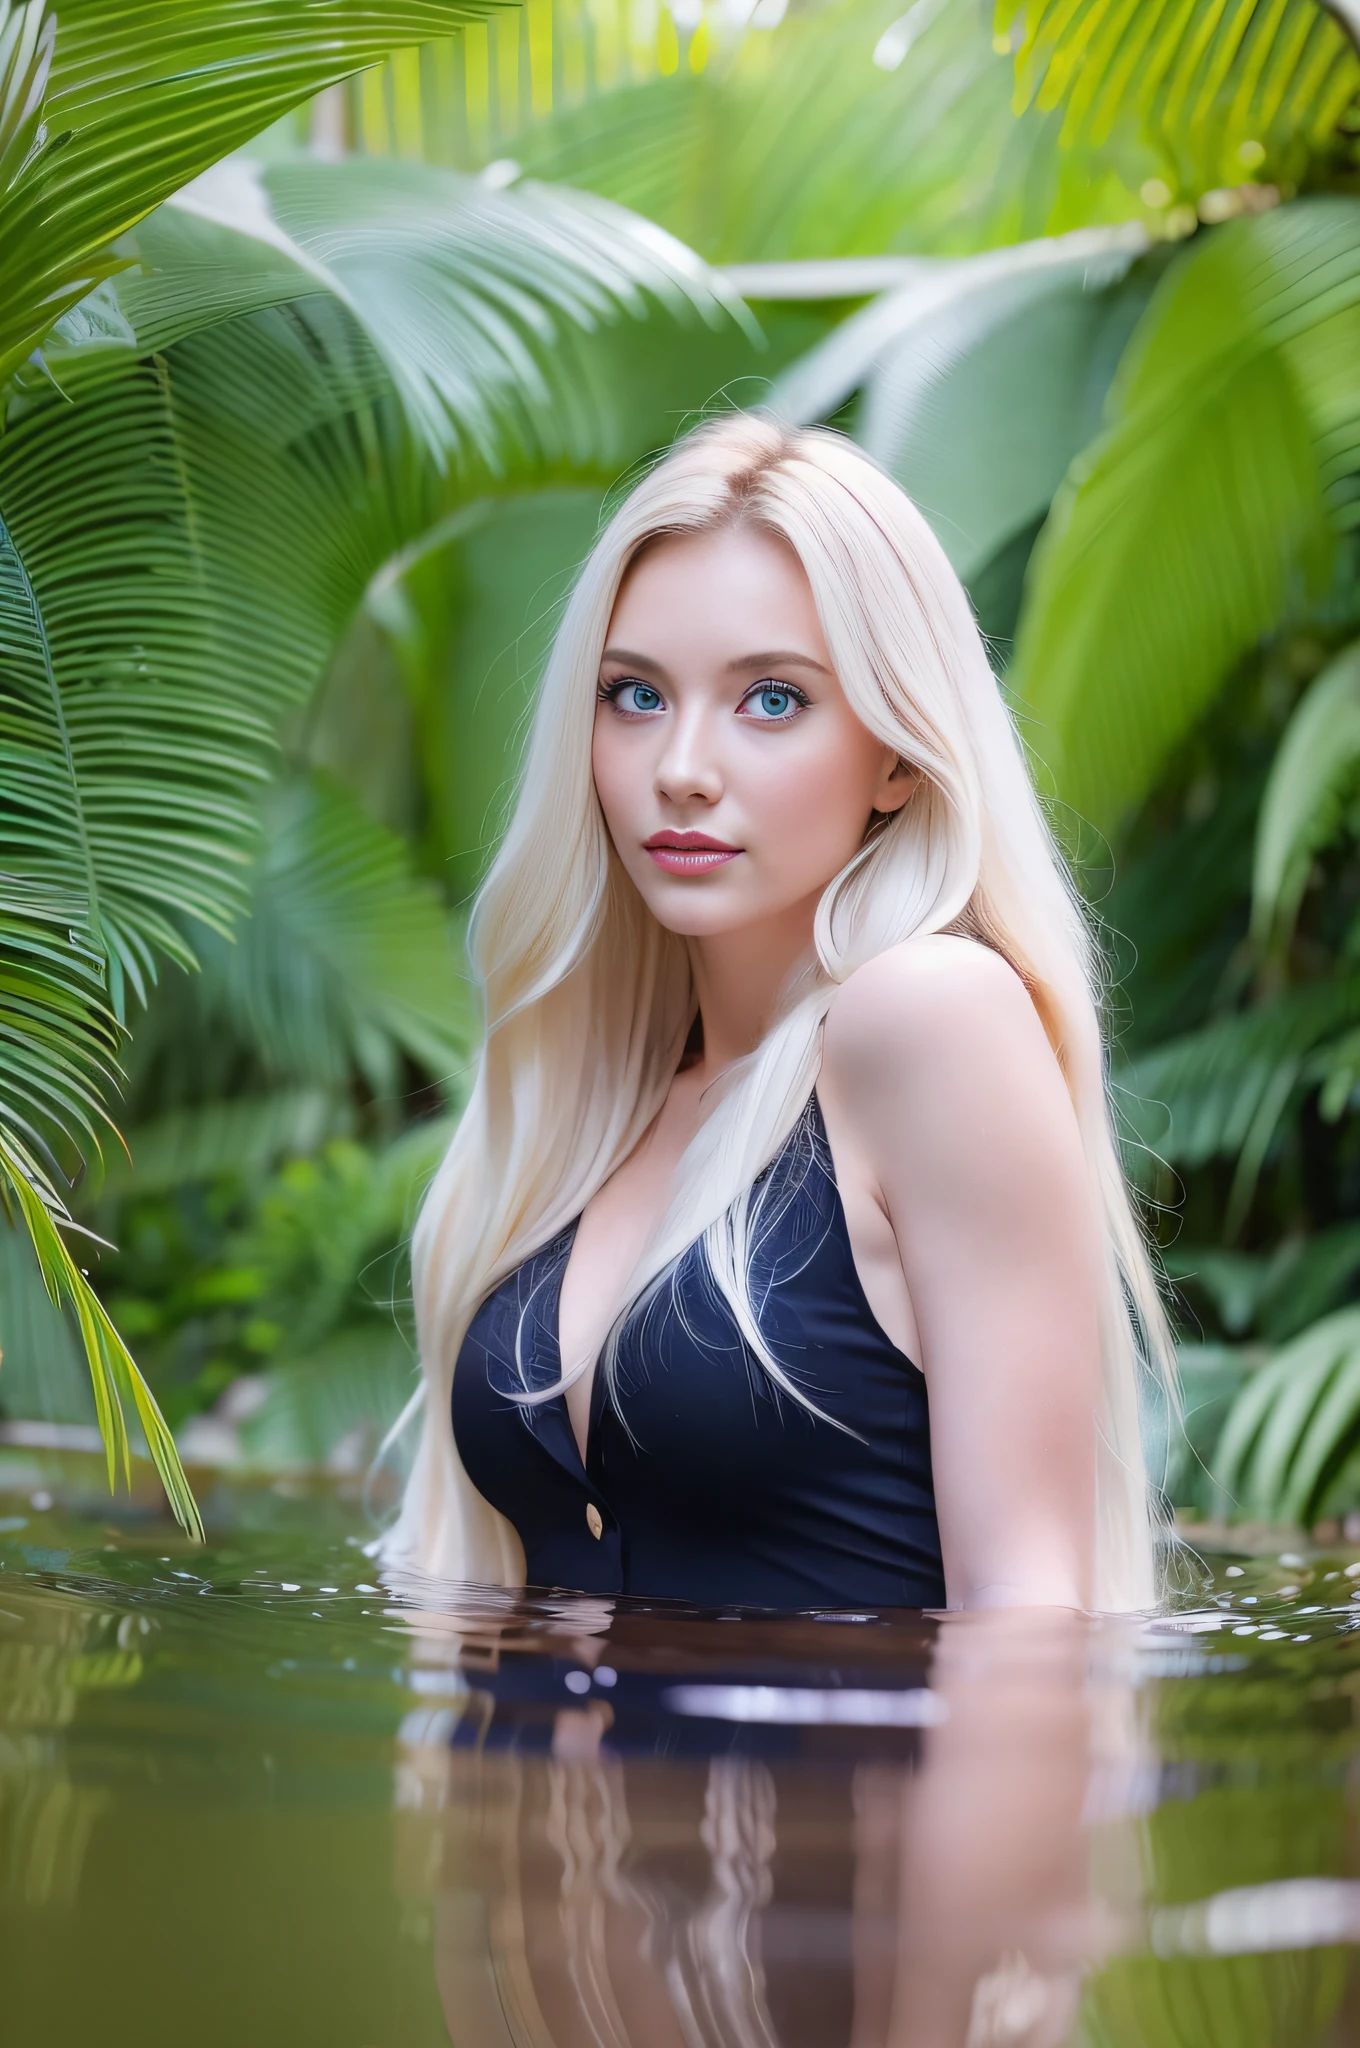 1 europäisches Mädchen, schönes Gesicht, Groß, blondes Haar, blaue Augen, Lange Beine, Bad, im Dschungel, Hochwertige Fotos, helles Sonnenlicht durch die Blätter.  , , , , , --q 1, DSLR --v 6 --s2